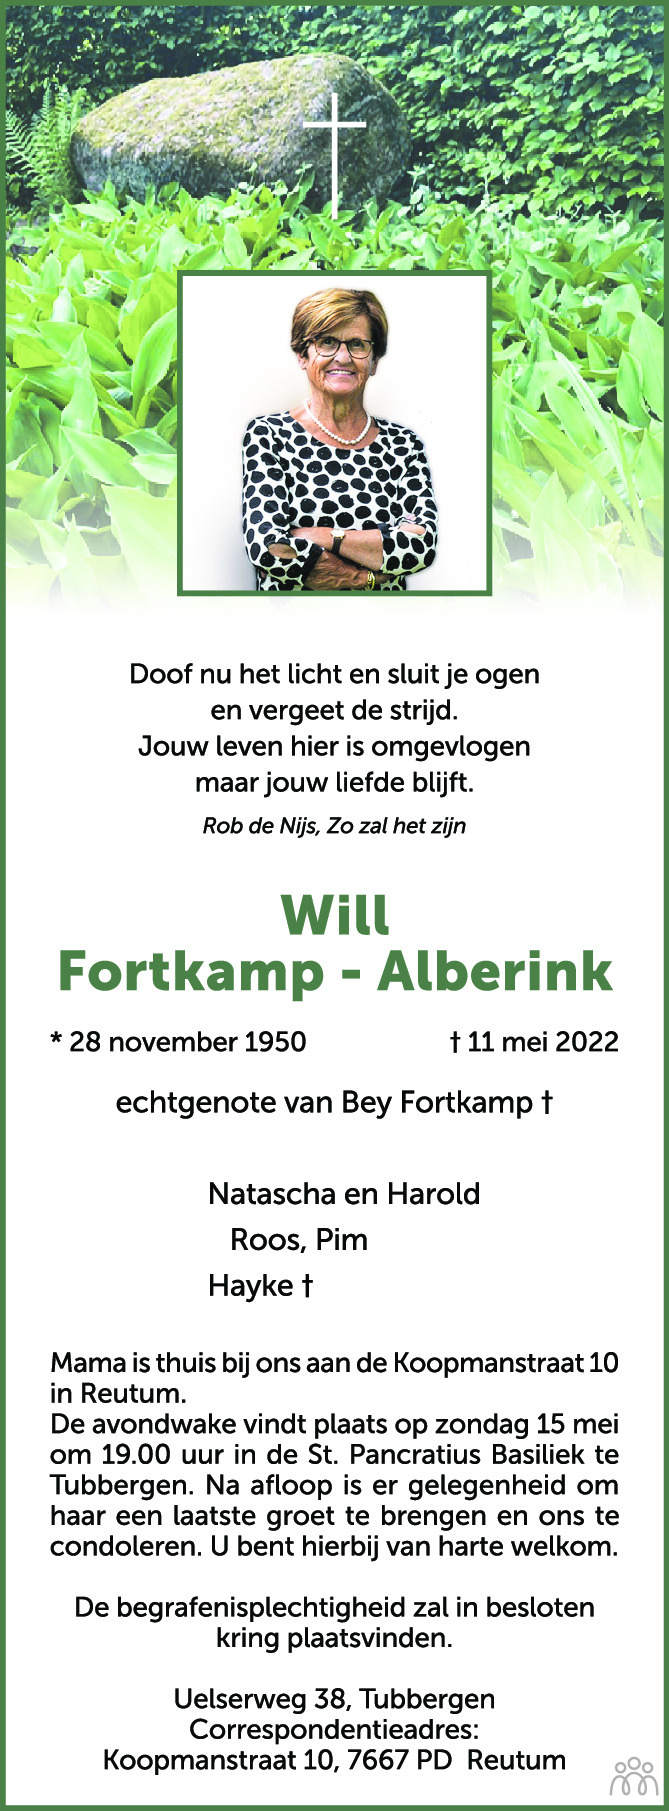 Overlijdensbericht van Will Fortkamp-Alberink in Tubantia